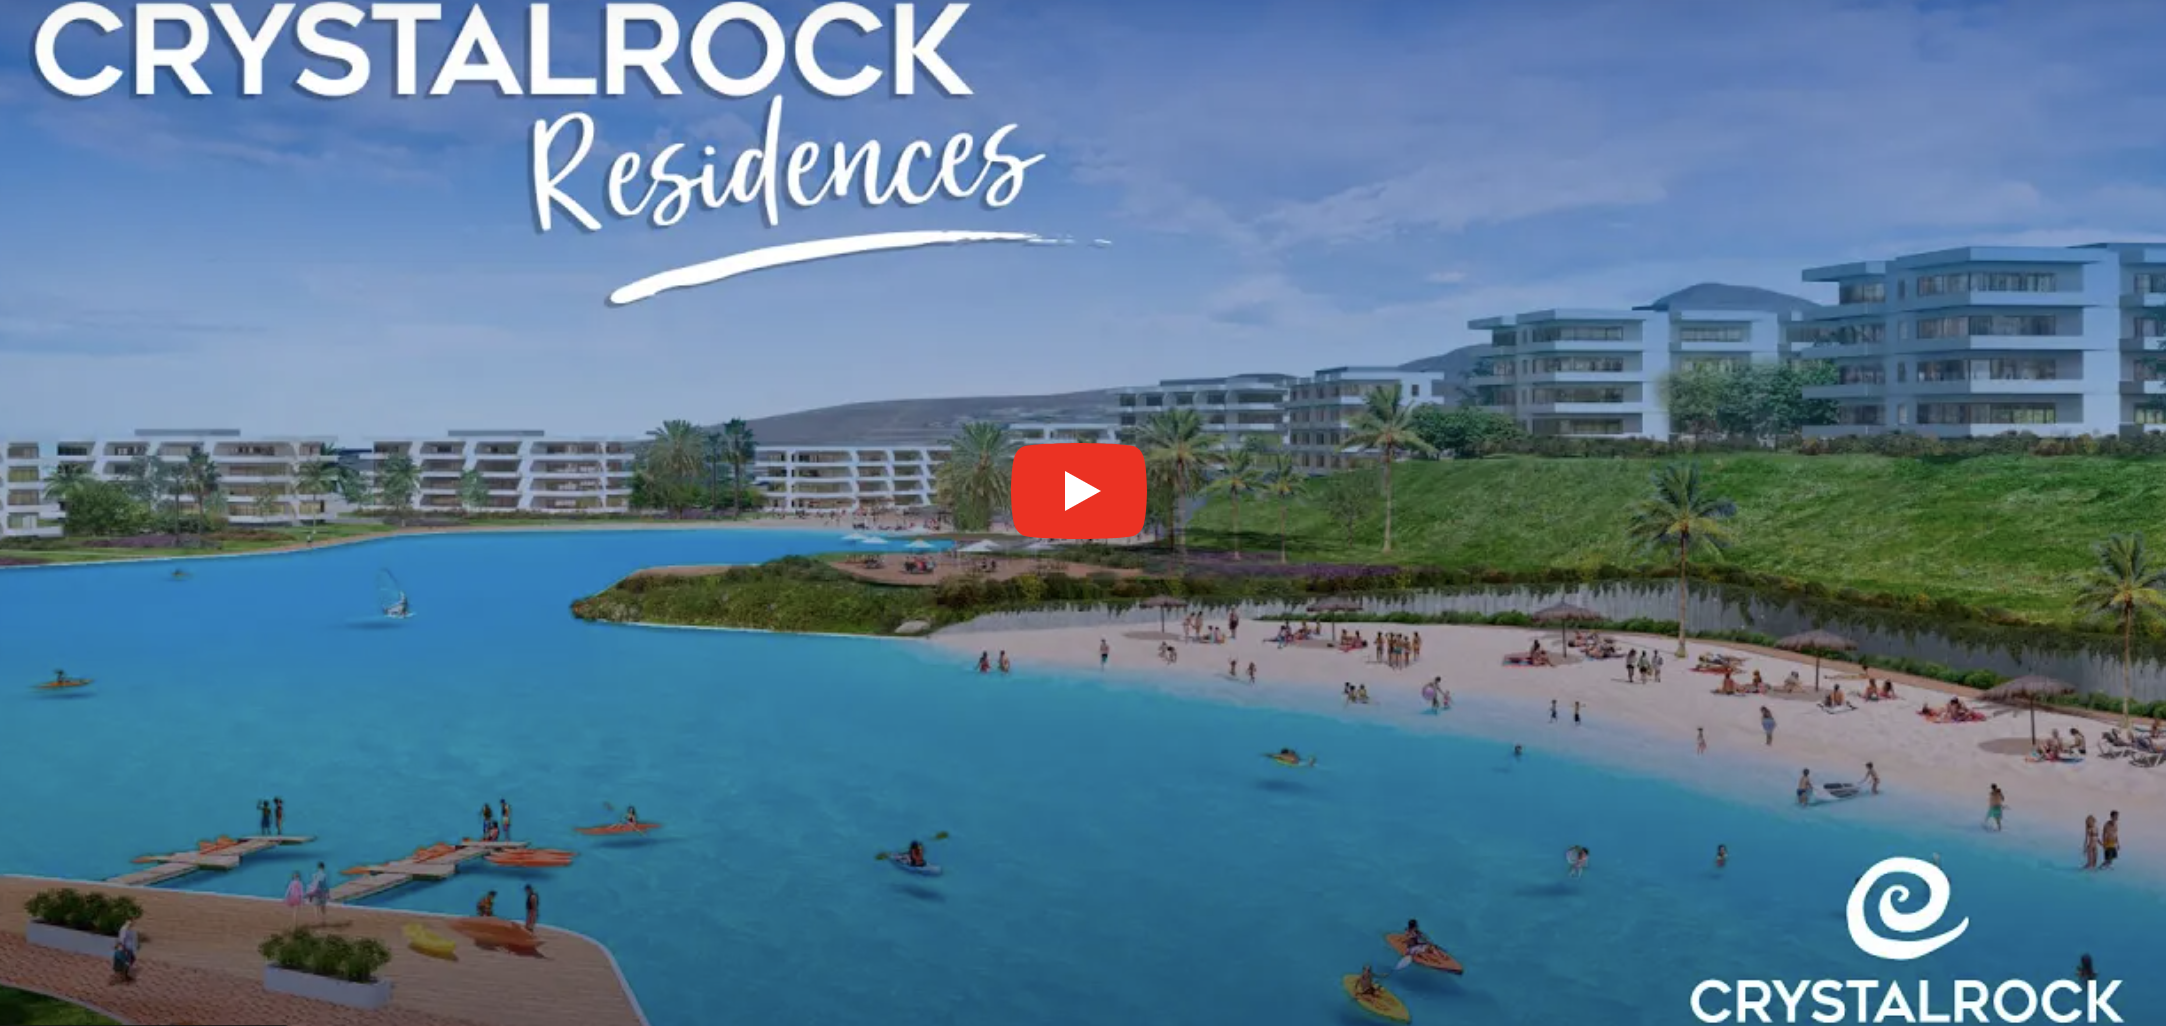 Crystal Rock Residences: “Podríamos estar frente a una de las estafas más grandes de los últimos años”